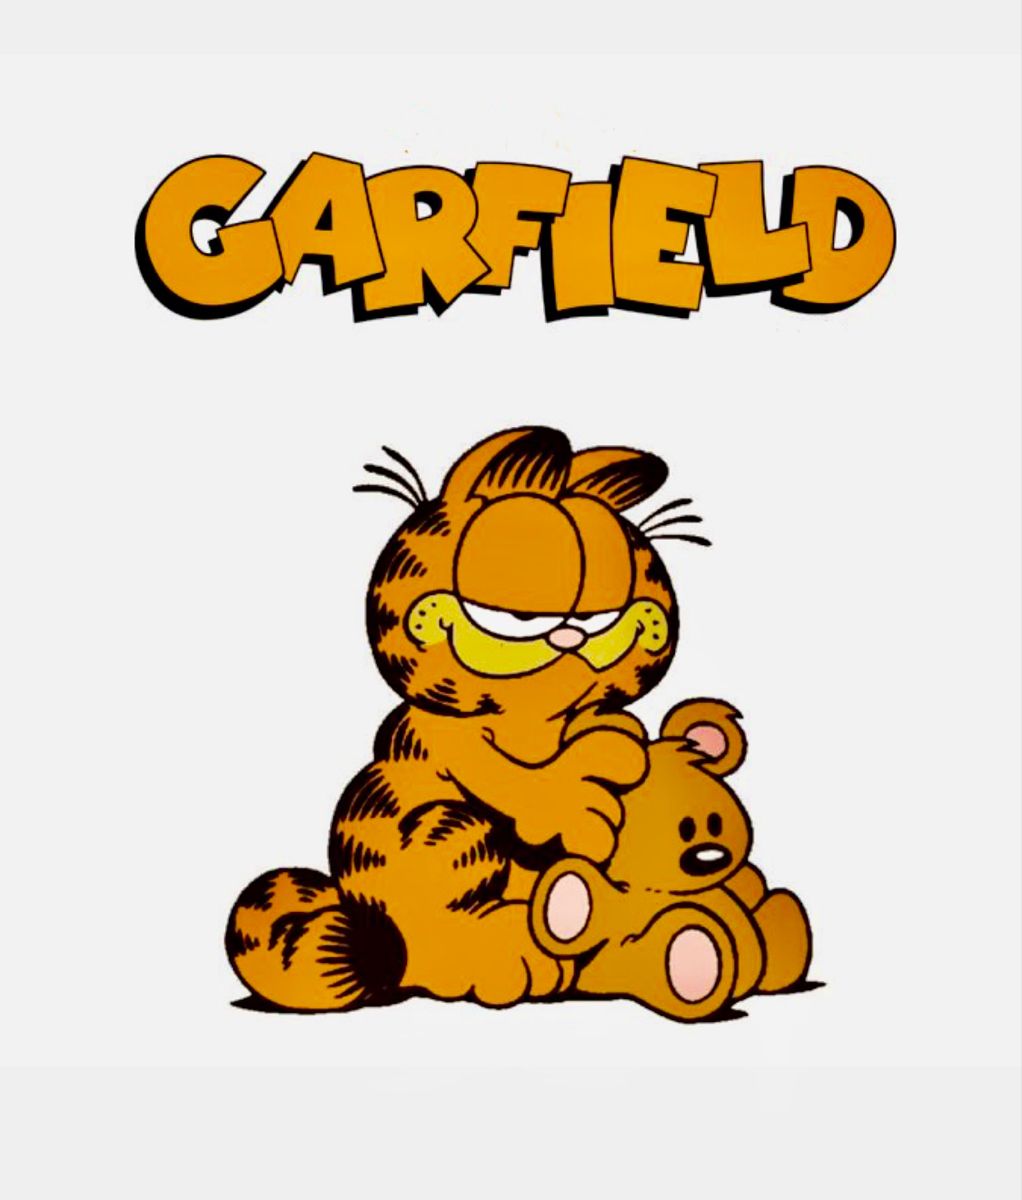 Tarihte Bugün:
Garfield karikatürleri yayımlanmaya başladı. (19 Haziran 1978)
Garfield, Jim Davis tarafından yaratılan bir karikatür karesidir. Garfield, Guinness Rekorlar Kitabı'nda en çok yer alan karikatür karesi olarak tarihe geçti.